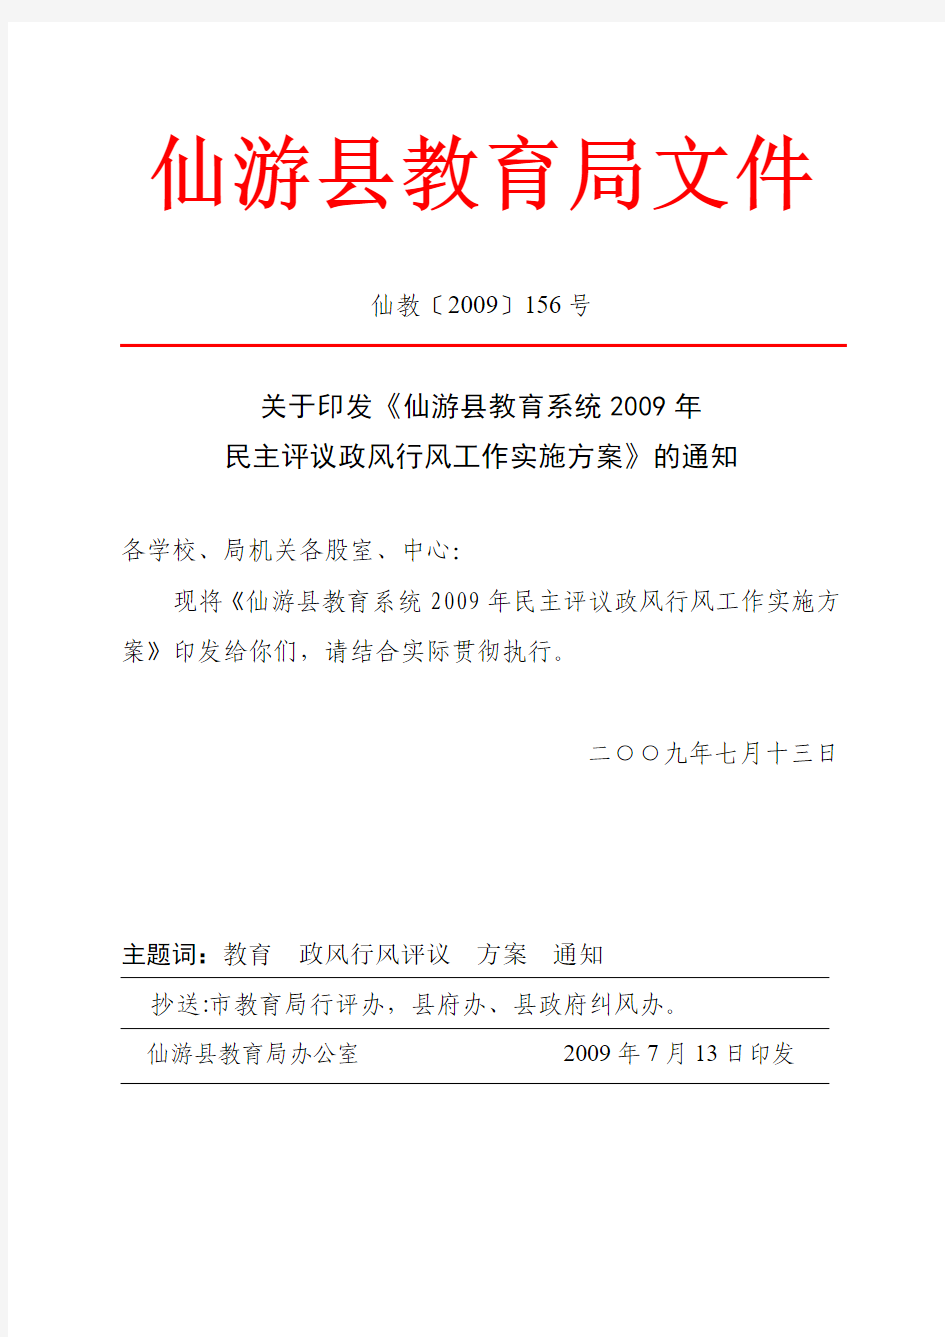 仙游县教育局文件